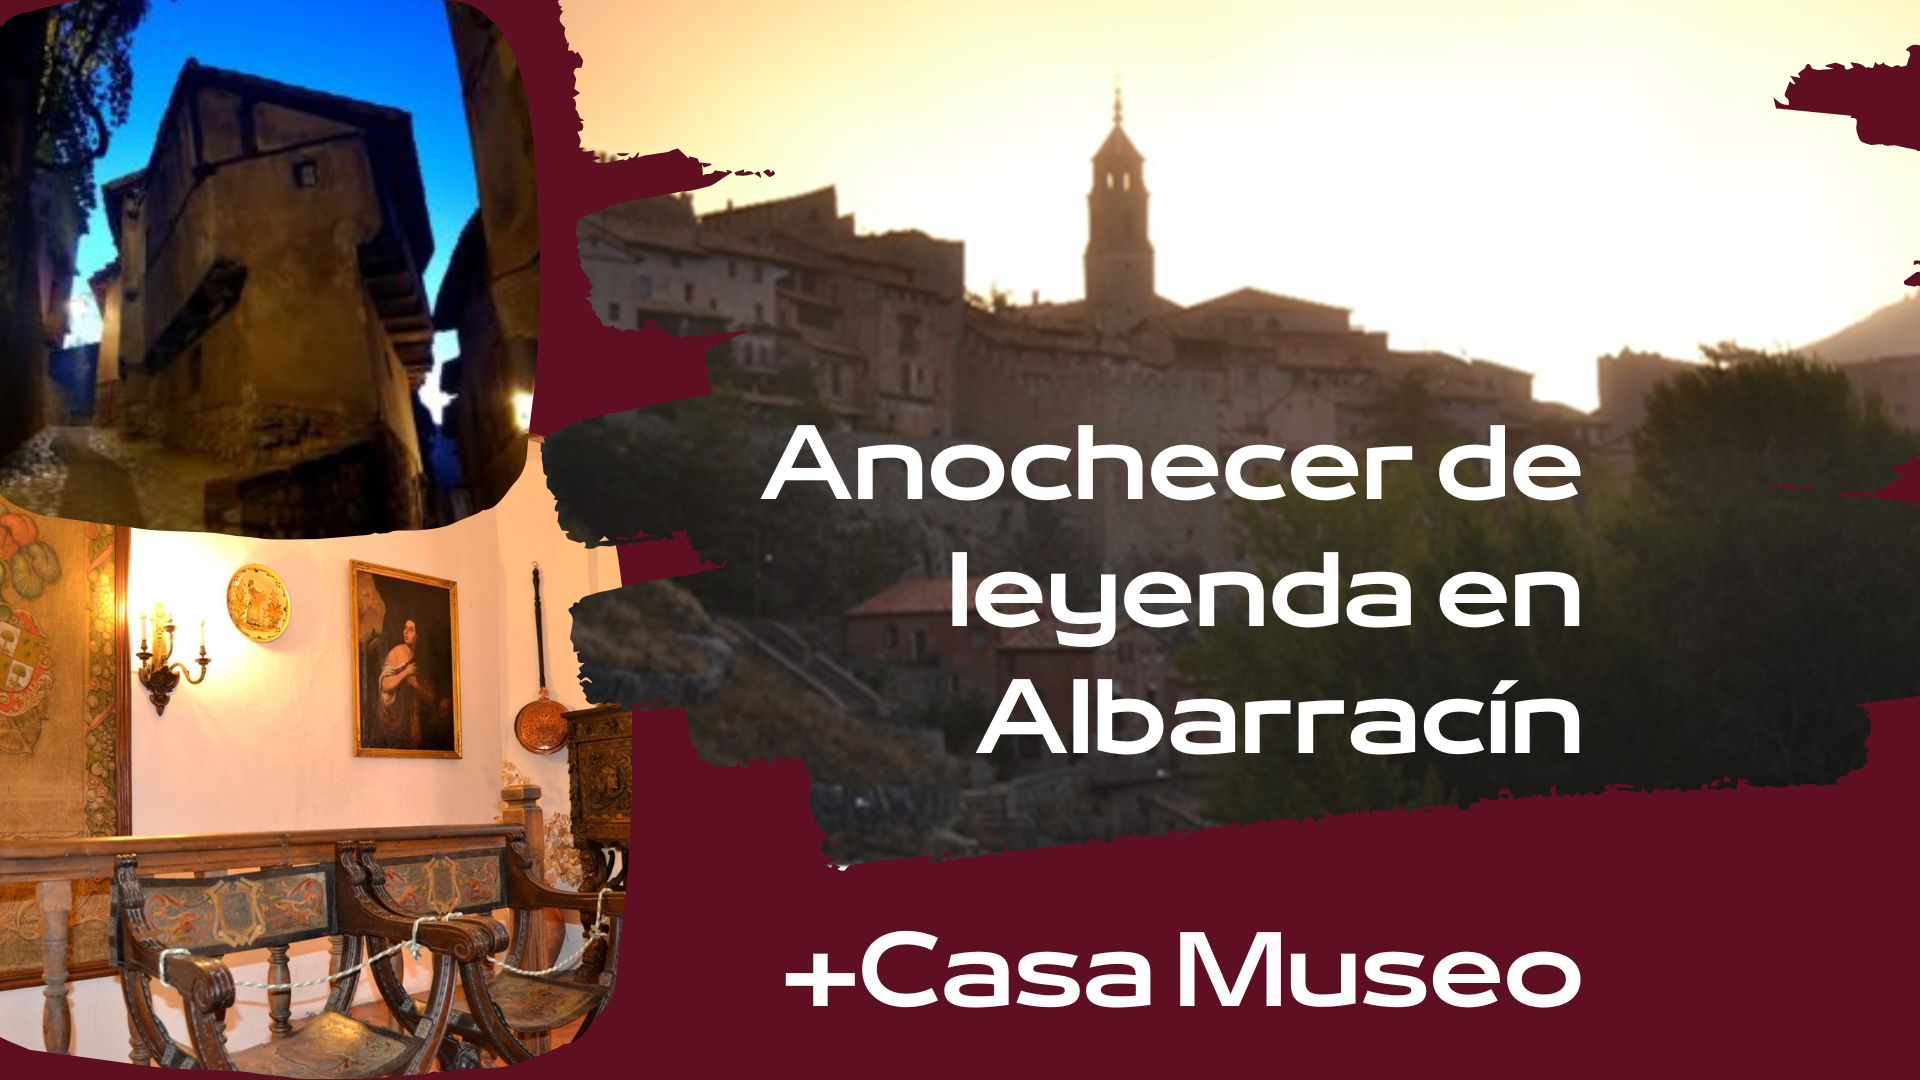 Visita guiada en Albarracín con Anochecer de Leyendas + Casa Museo…sólo el 26 de Noviembre!